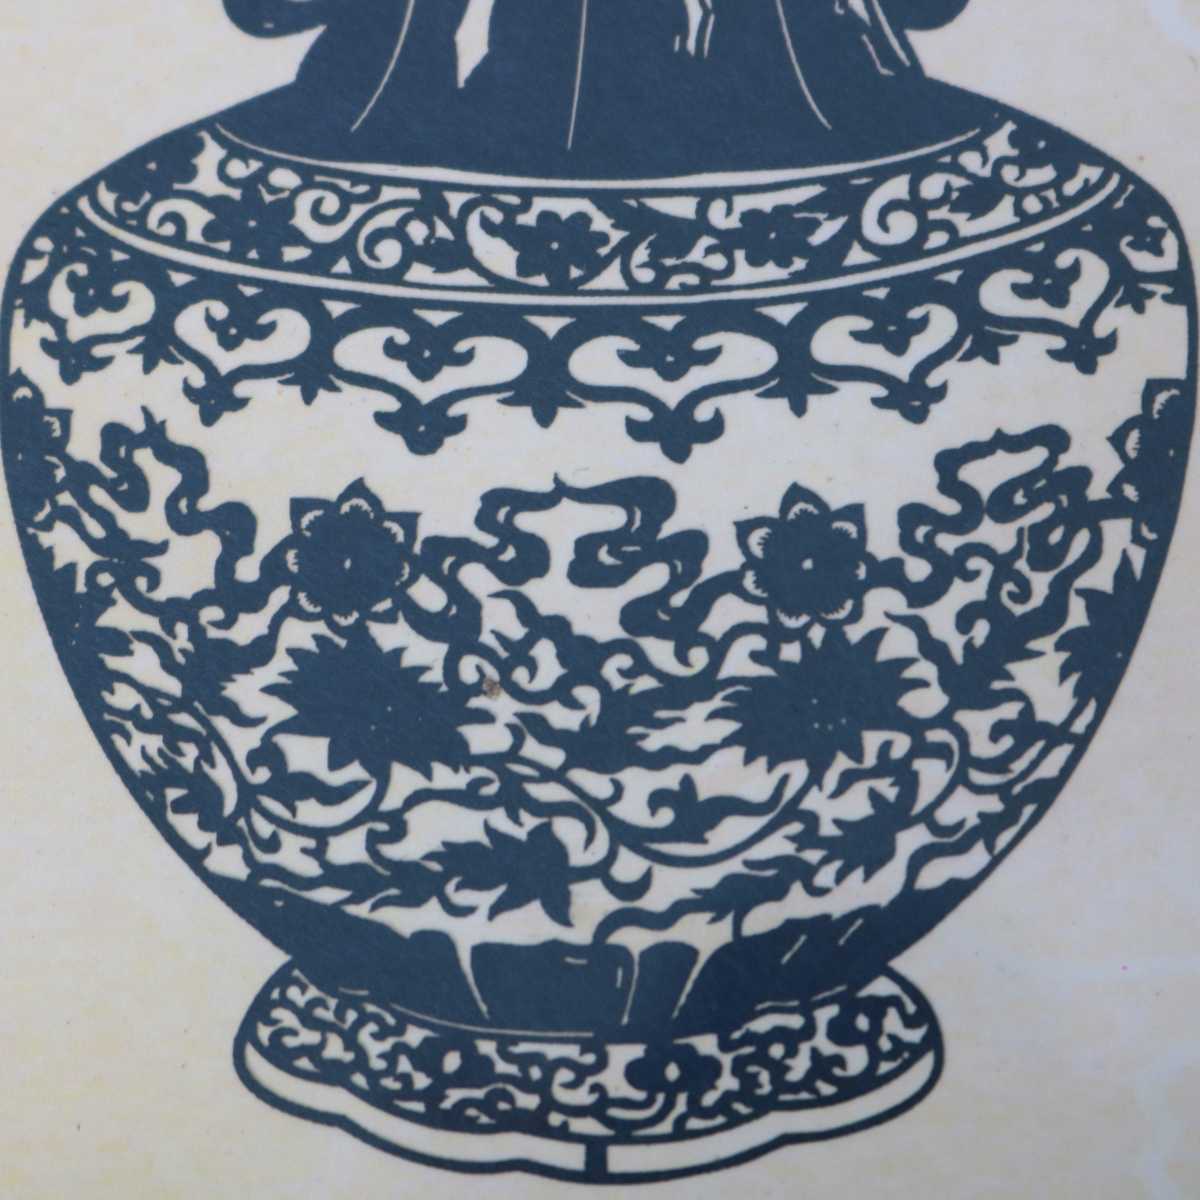 【中古】 中国 剪紙藝術 ペーパーカットアート 切絵 青花 壺 花瓶 額入り 写真立て 壁掛け 箱 額:14.3×15.5(cm) 壺:6.5×10(cm) NT 美品 ABランク 3